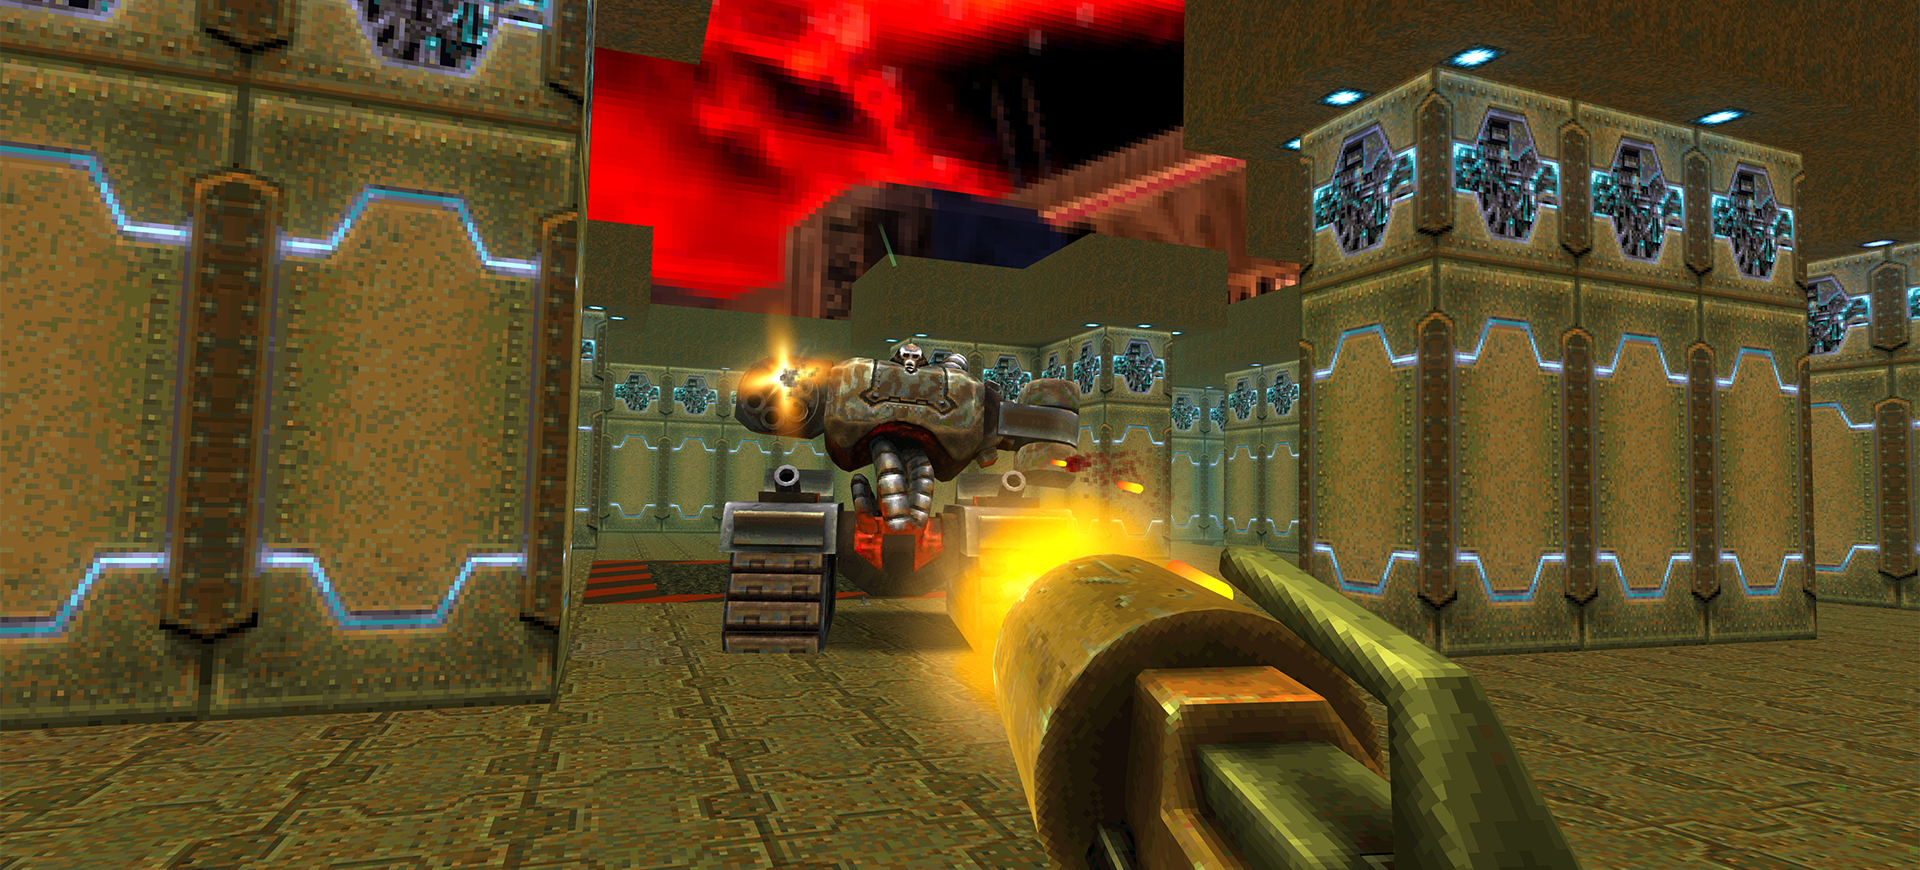 Vuelve Quake II! Jugad HOY MISMO a la versión mejorada